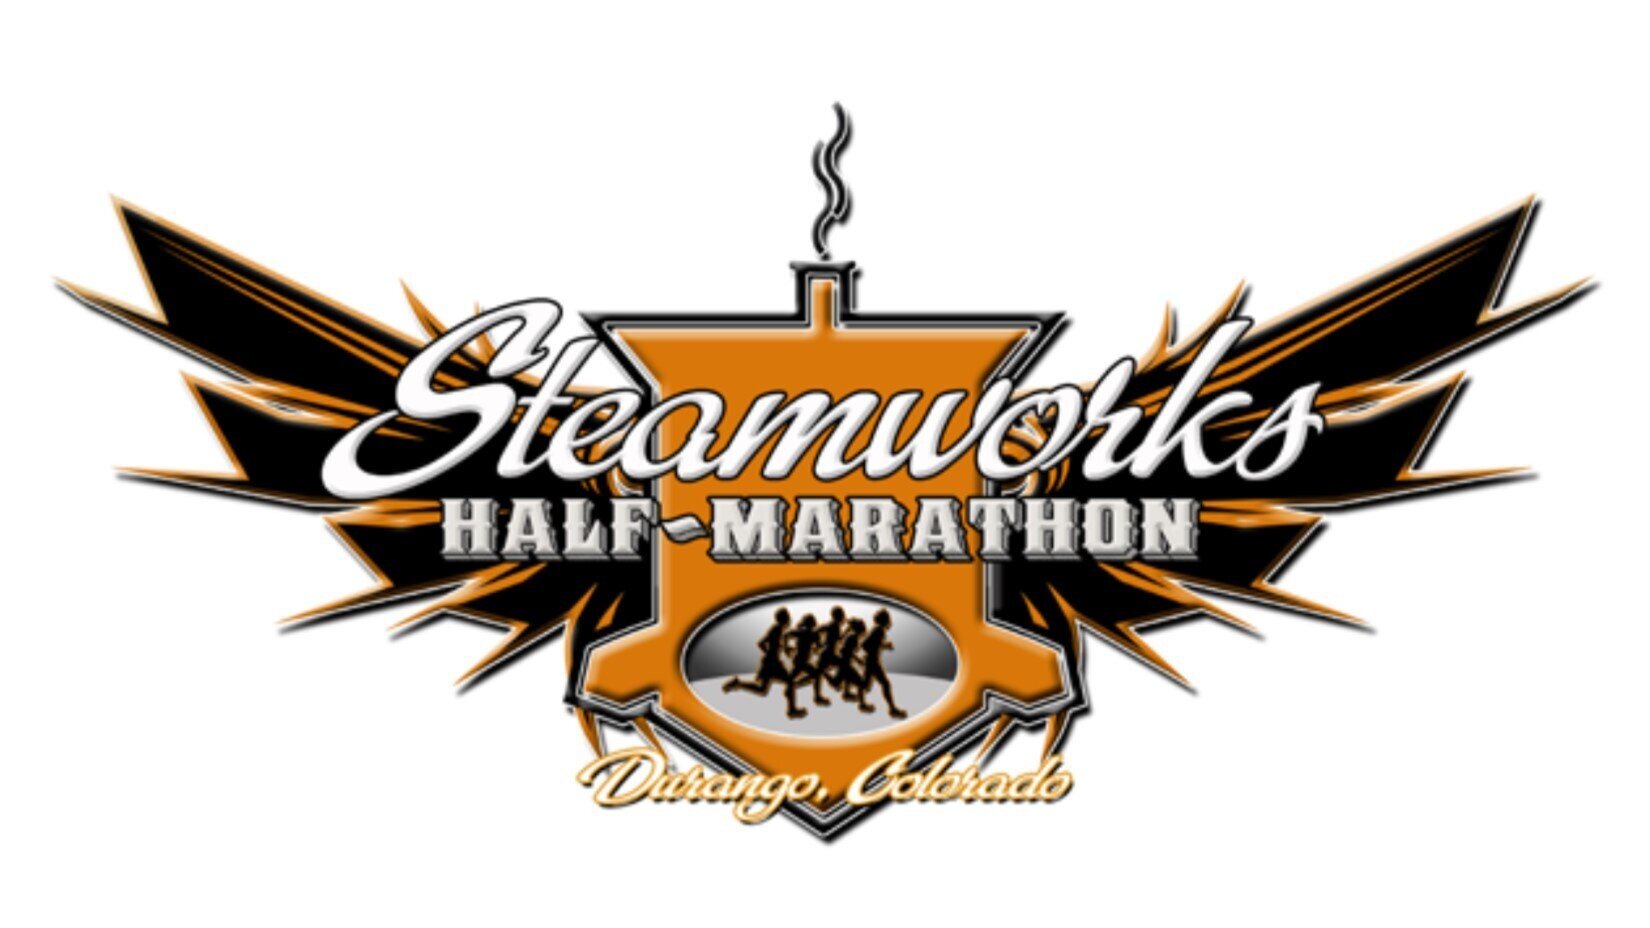 Steamworks Half Marathon Durango Running Club